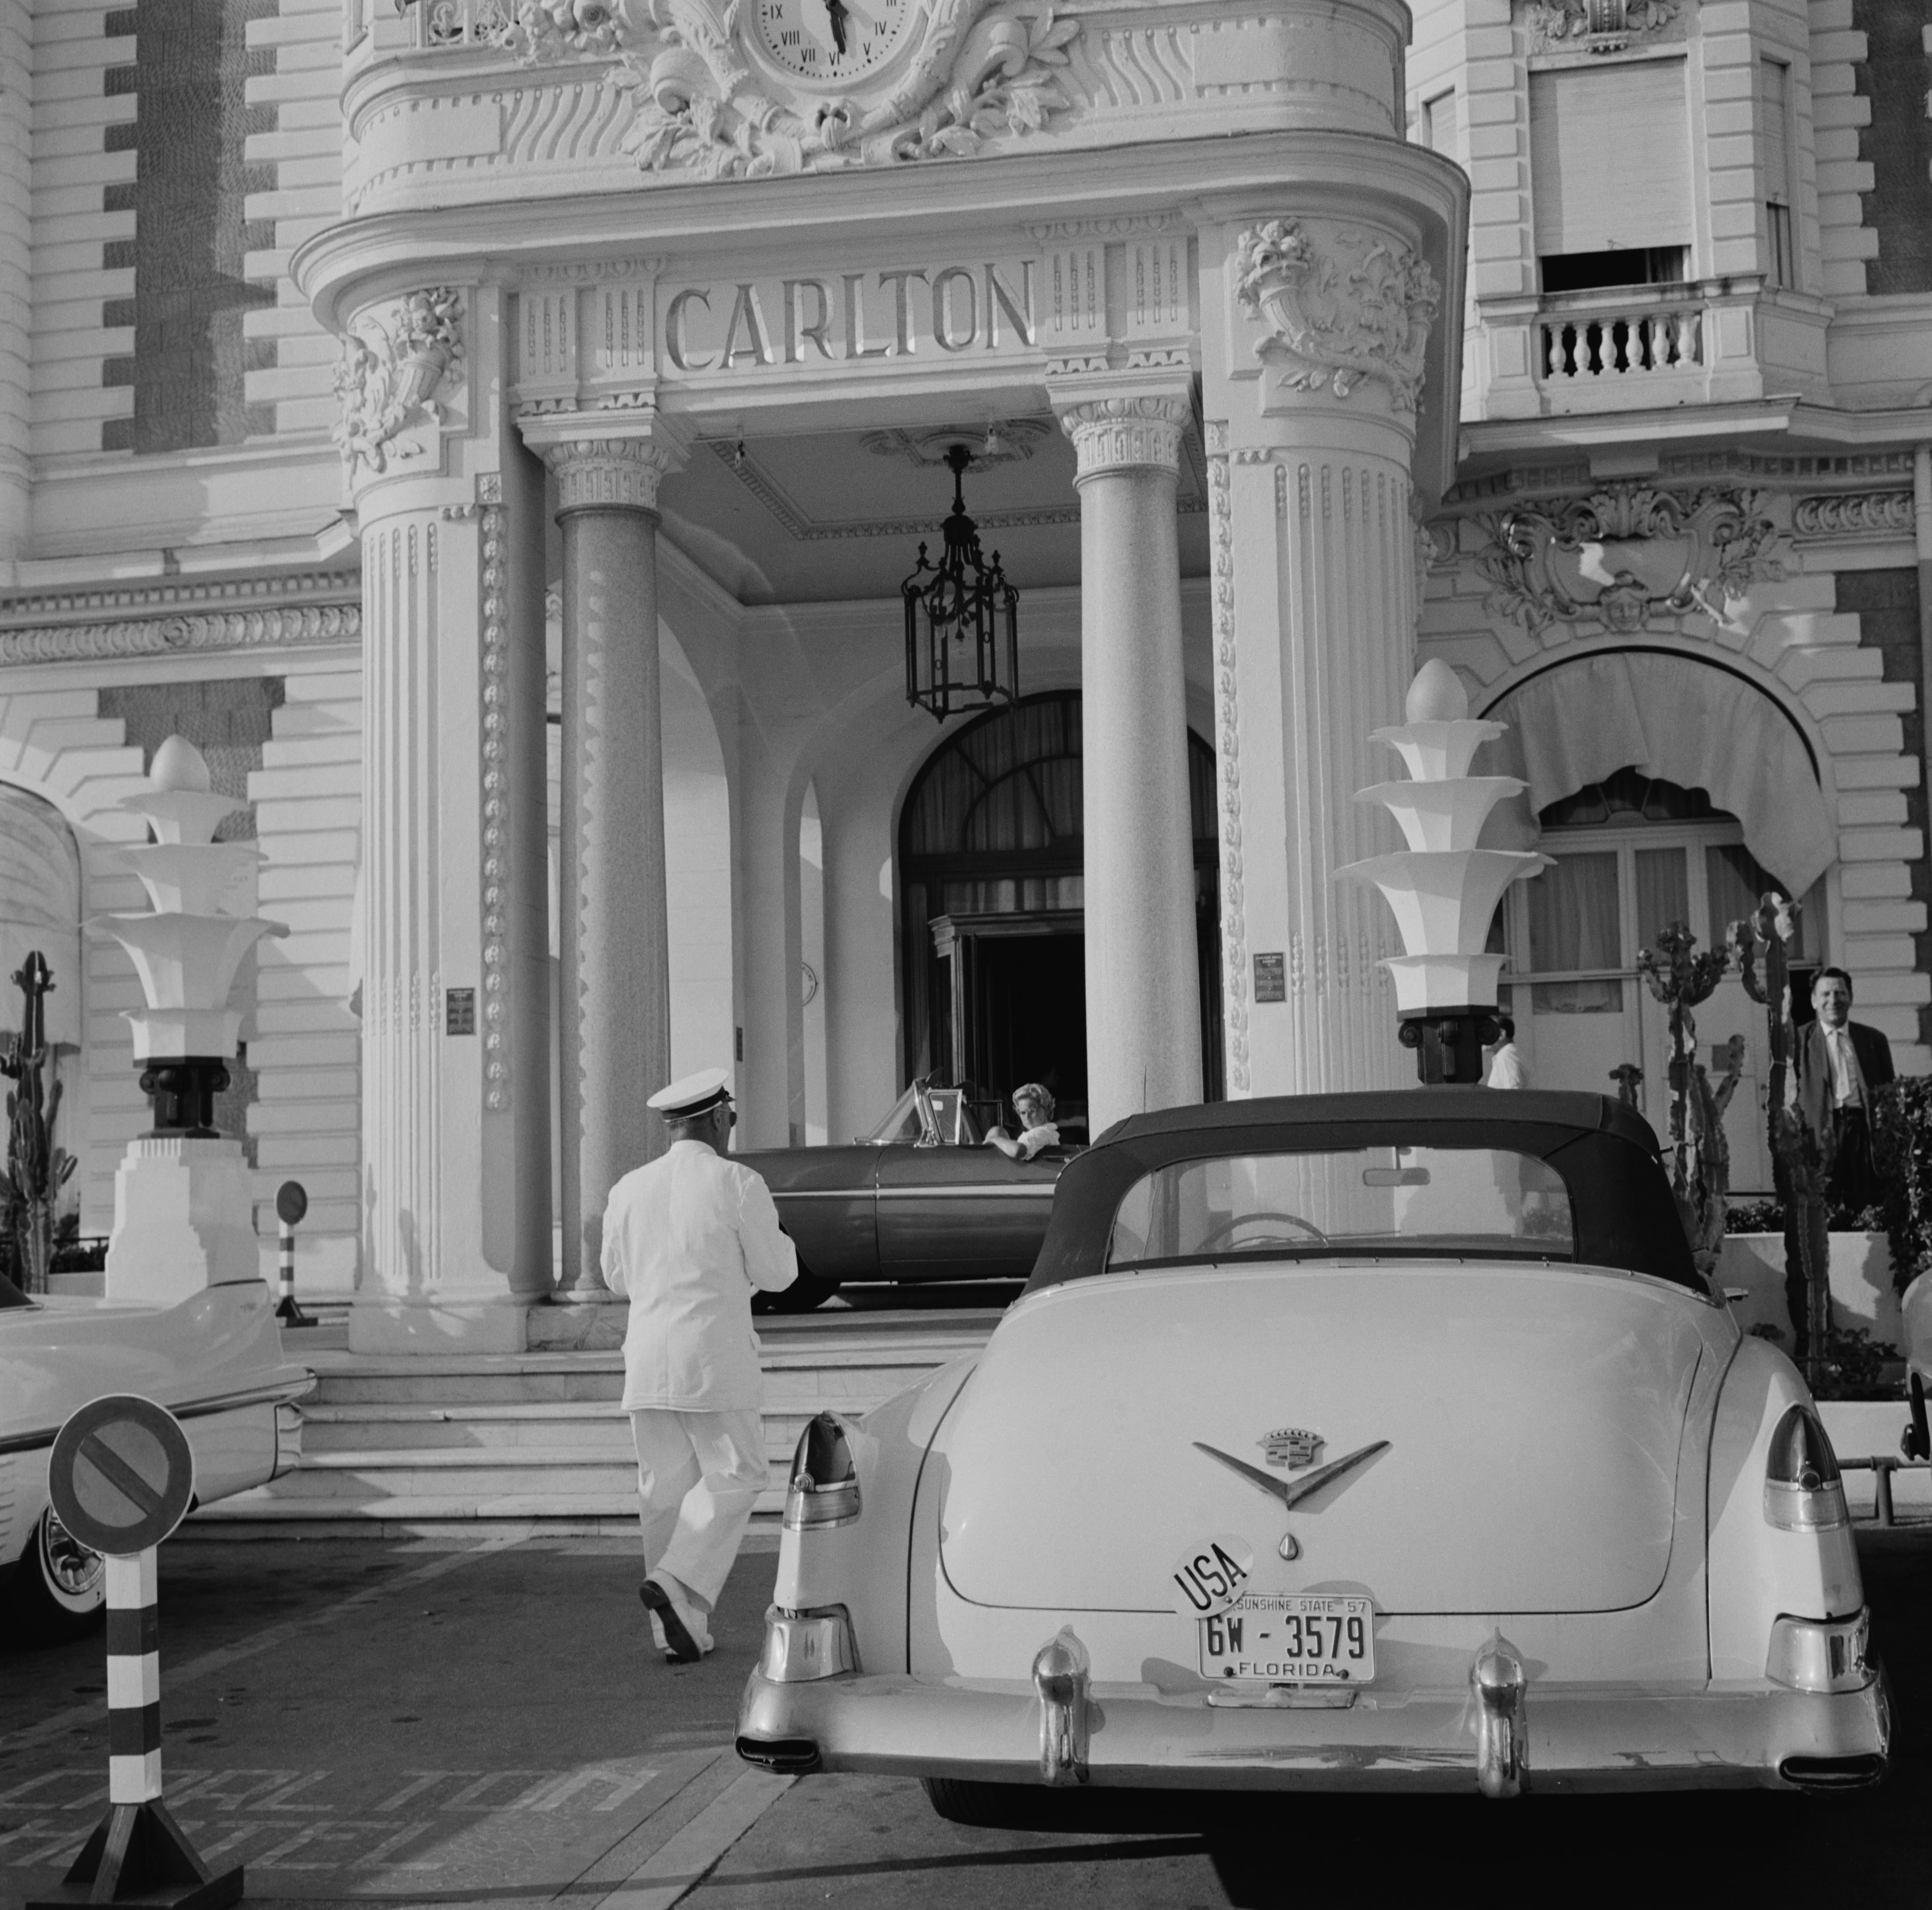 The Carlton Hotel" 1955 Slim Aarons Limited Estate Edition
Une Cadillac avec des plaques de Floride garée devant l'hôtel Carlton, Cannes, France, vers 1955. 

Slim Aarons, impression à base de gélatine argentée et de fibres 
Imprimé plus tard 
Slim